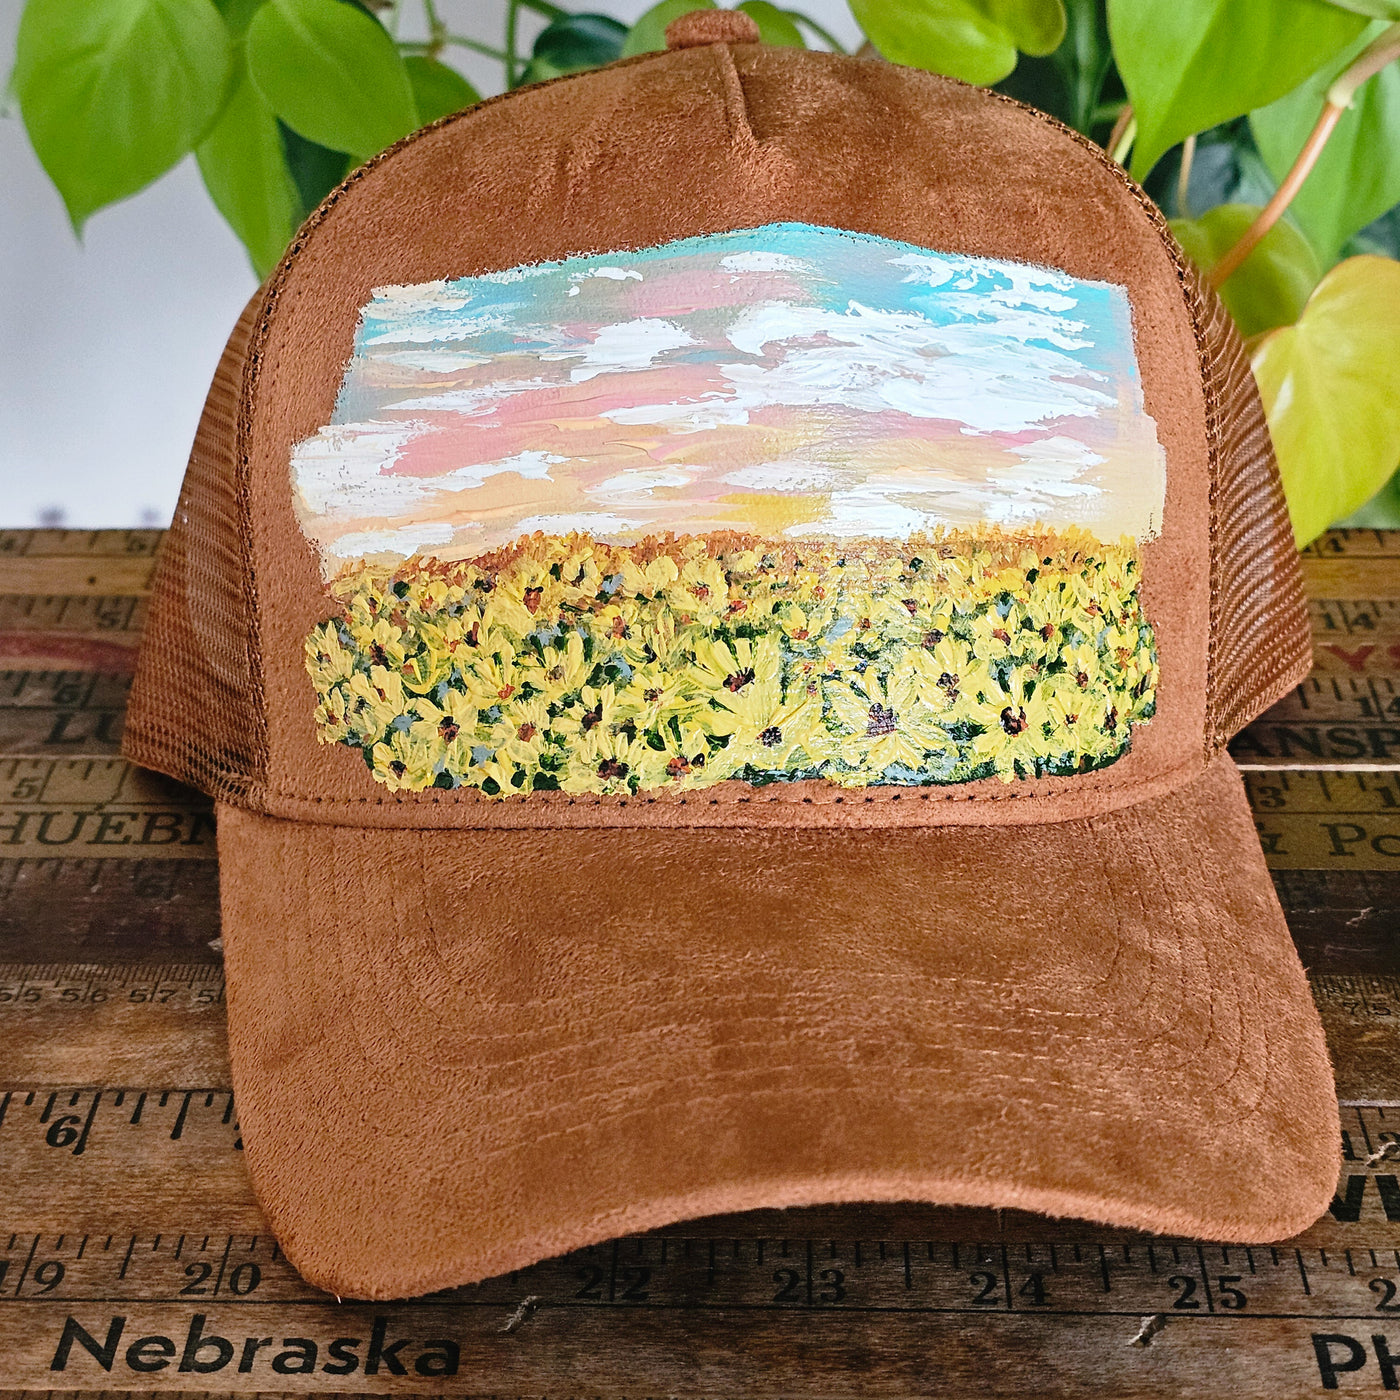 Sunflower Fields|| Trucker Style Suede Hat || Freehand Design